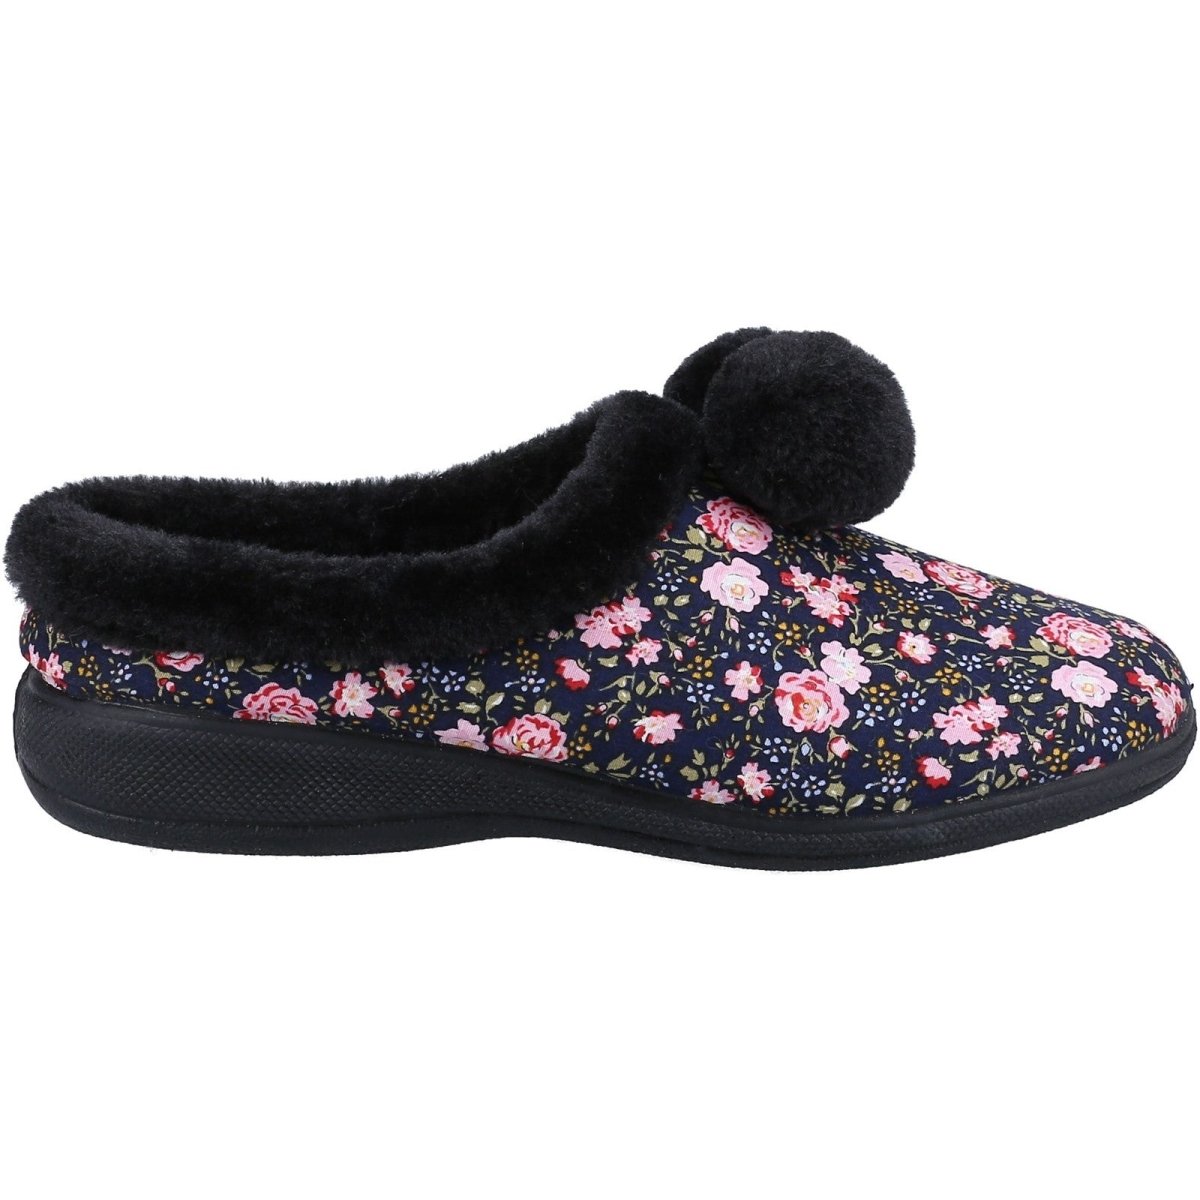 Fleet & Foster Buzzard Pom Poms Ladies Mule Slippers - Shoe Store Direct